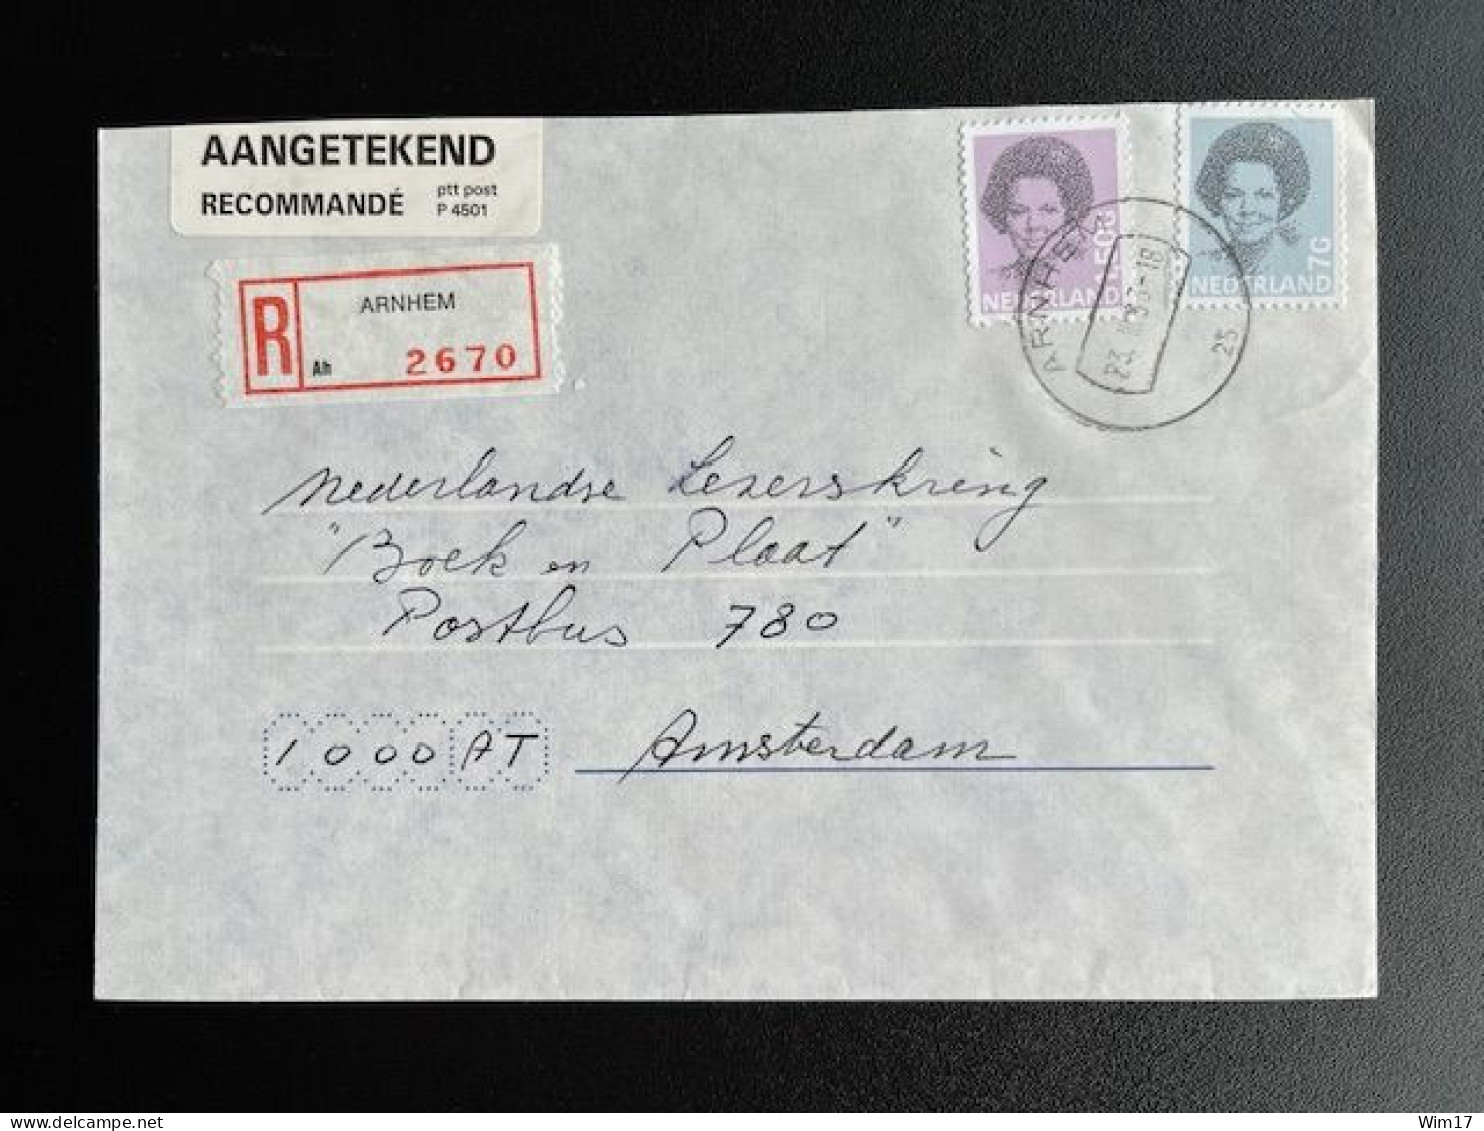 NETHERLANDS 1993 REGISTERED LETTER ARNHEM TO AMSTERDAM 23-03-1993 NEDERLAND AANGETEKEND - Briefe U. Dokumente